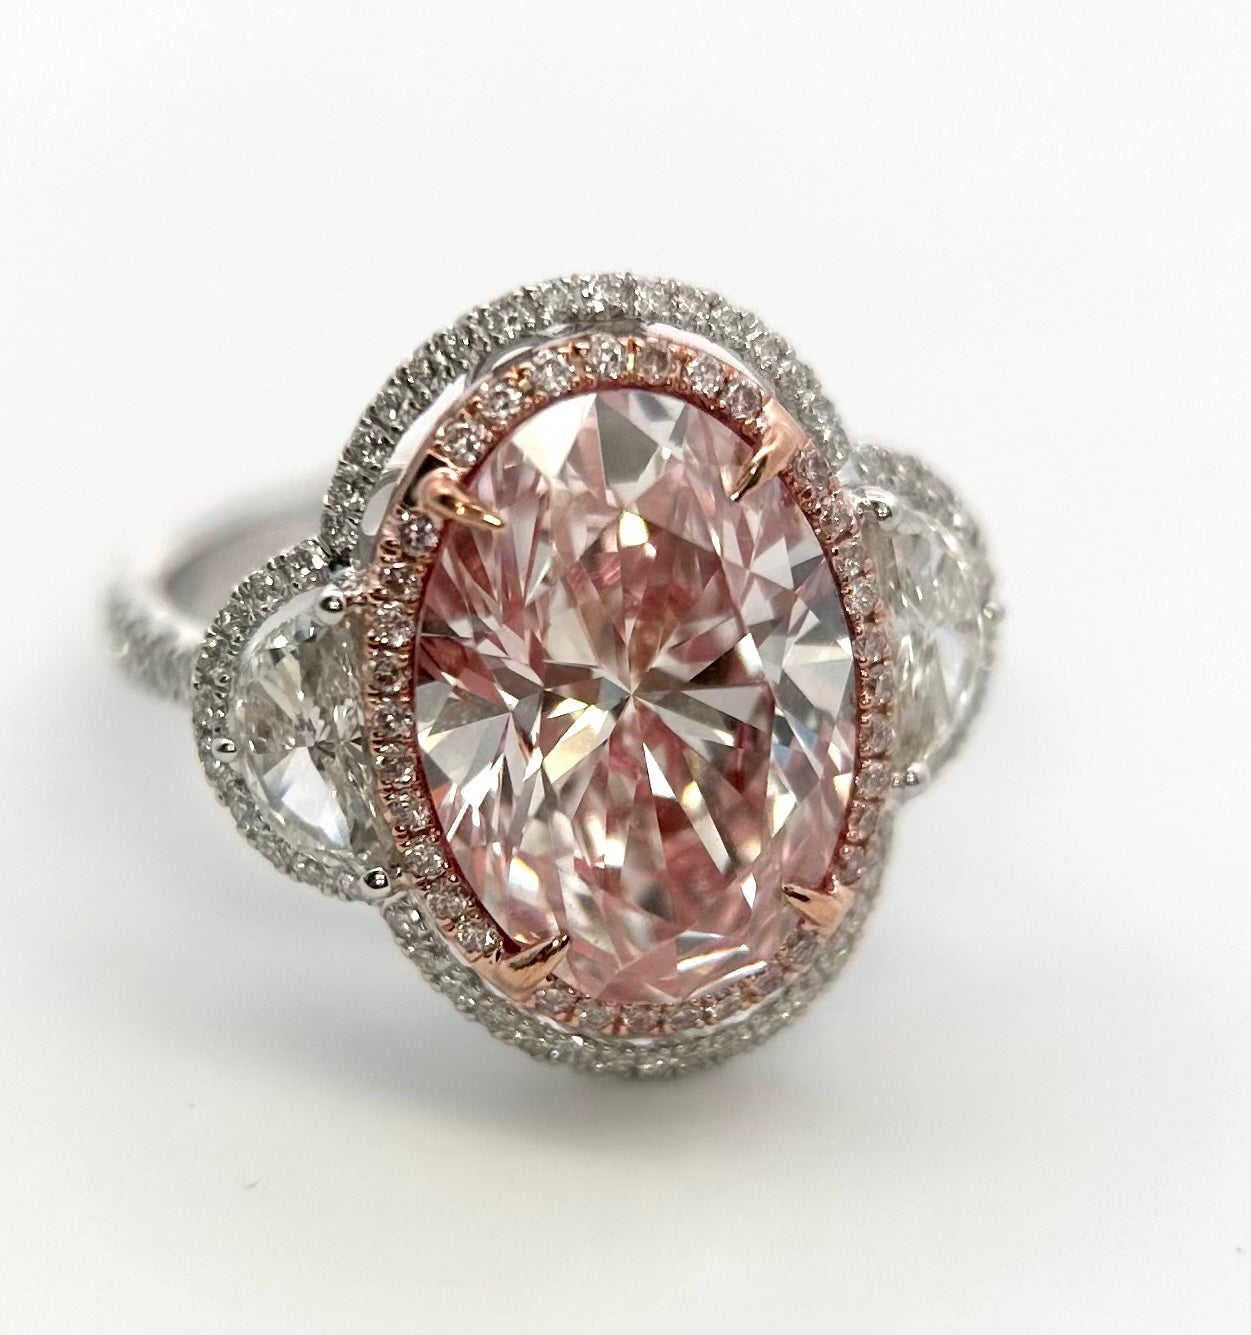 Äußerst selten und sehr begehrt, Nachlass GIA zertifiziert Typ 2a oder IIa großen ovalen Schnitt 6,00 Karat natürlichen rosa Diamanten und weißen Diamanten drei Stein-Ring in 18 Karat Weiß-und Roségold gesetzt. Dies ist ein sehr bemerkenswerter und